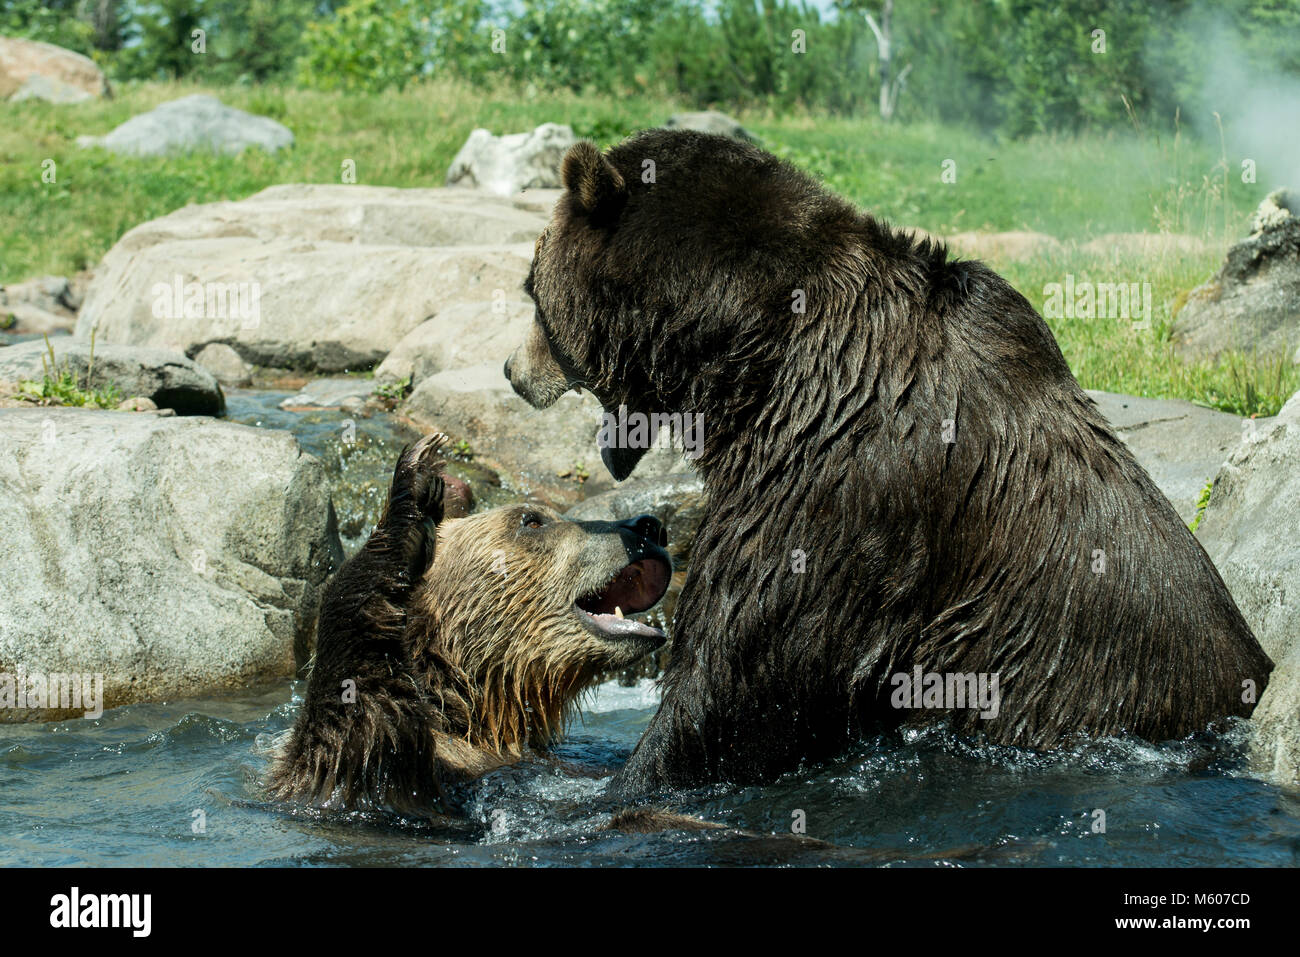 Apple Valley, Minnesota. Minnesota Zoo. Russlands Grizzly coast aufweisen. Brauner Bär aka Grizzly, Ursus arctos. Bären sind wahrscheinlich Kämpfen zu zeigen die Stockfoto